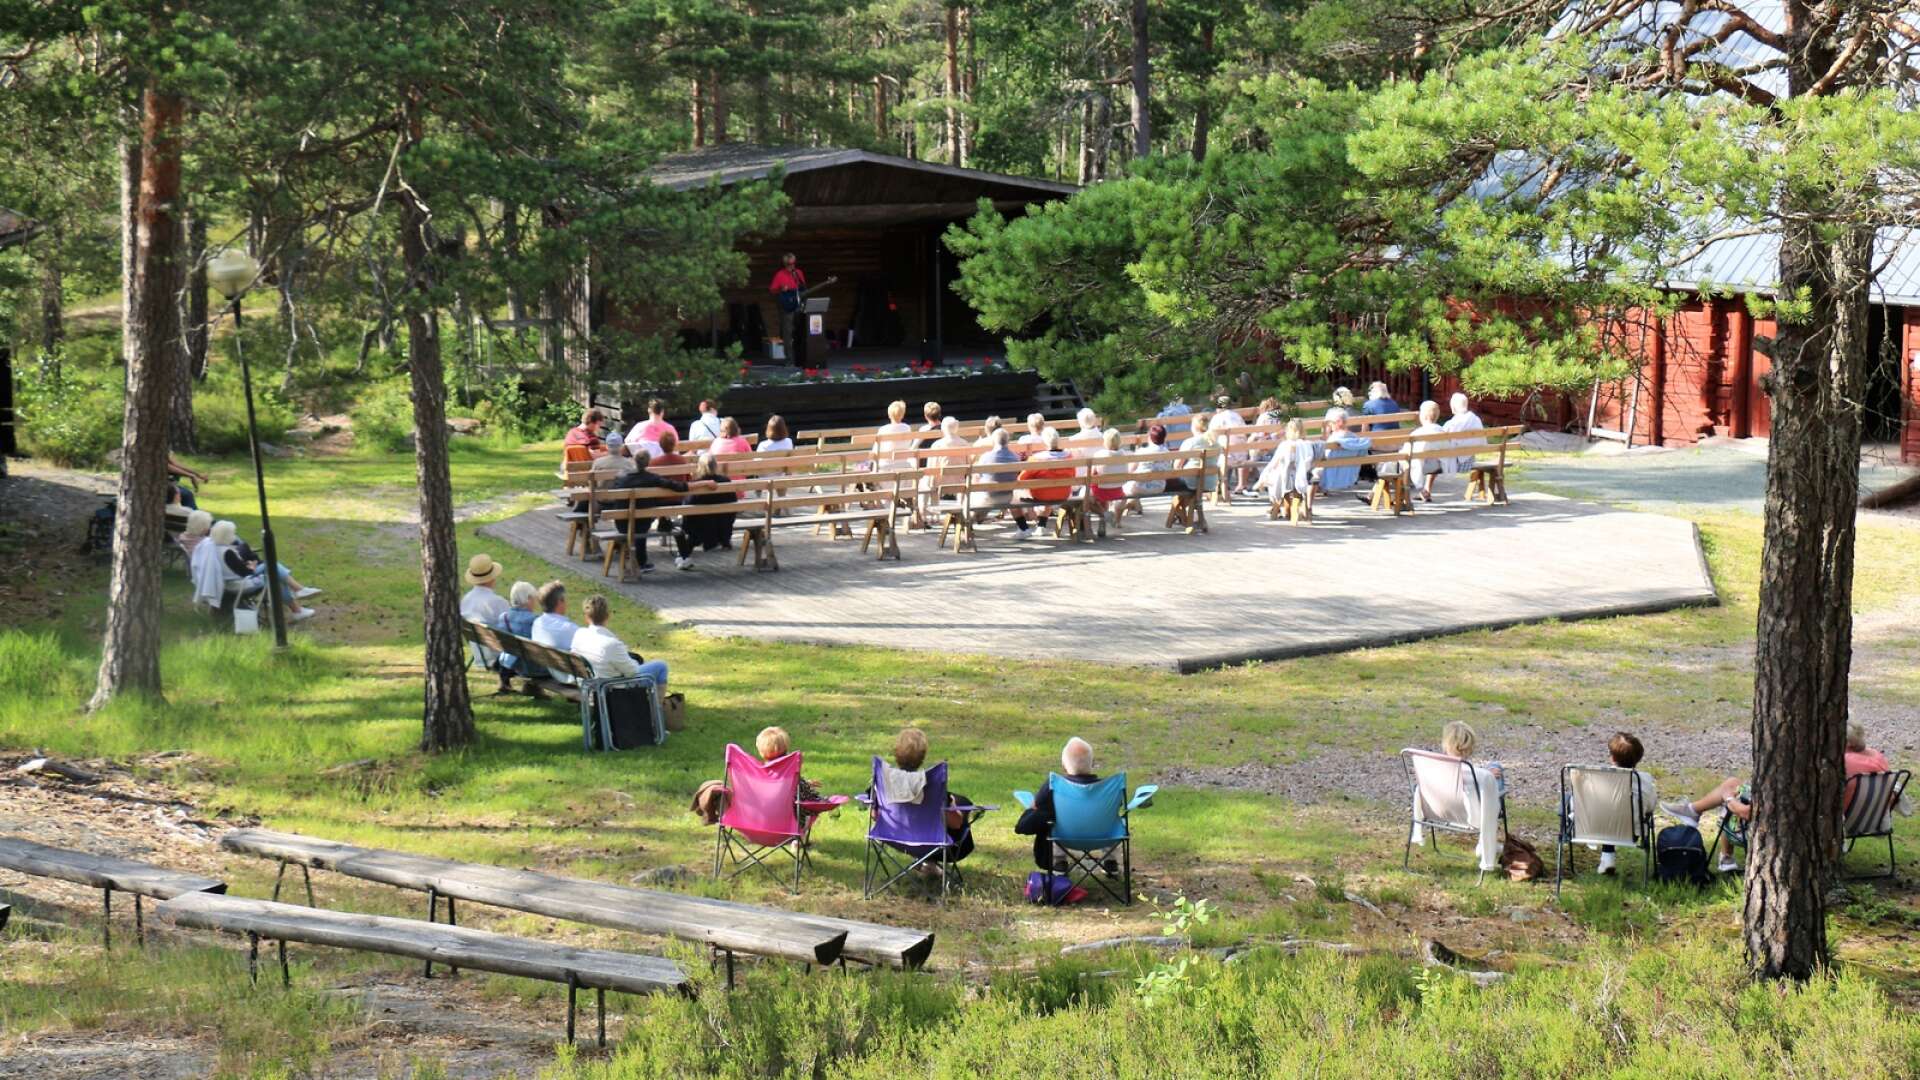  
Publiken såg ut att trivas där de satt utspridda på bänkar och bergknallar den här sista junikvällen som blev den första evenemangskvällen.